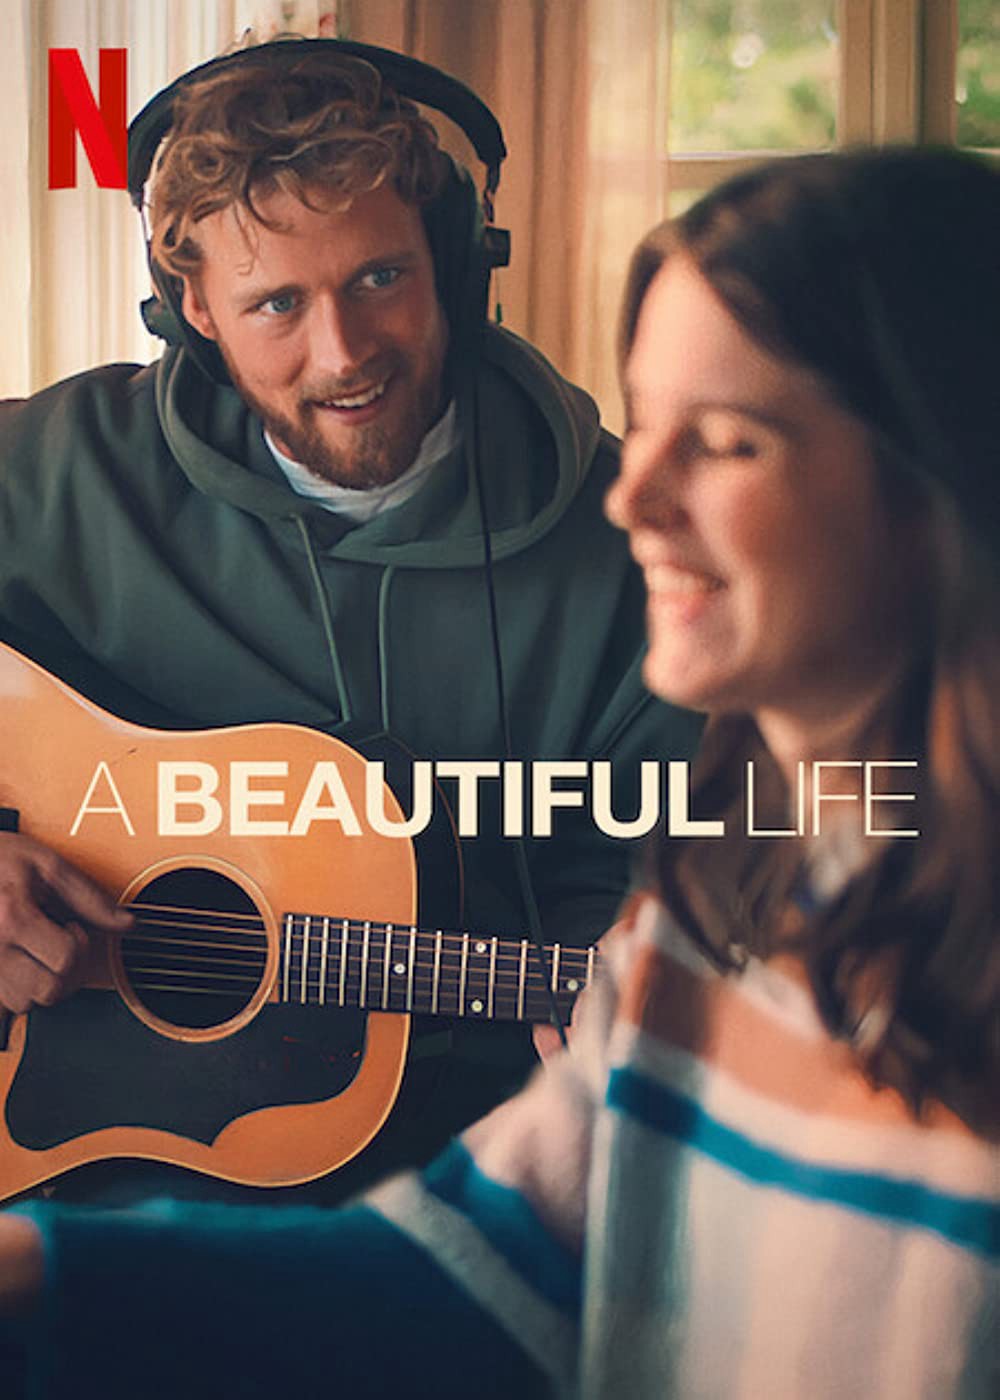 Một cuộc đời đẹp - Một cuộc đời đẹp